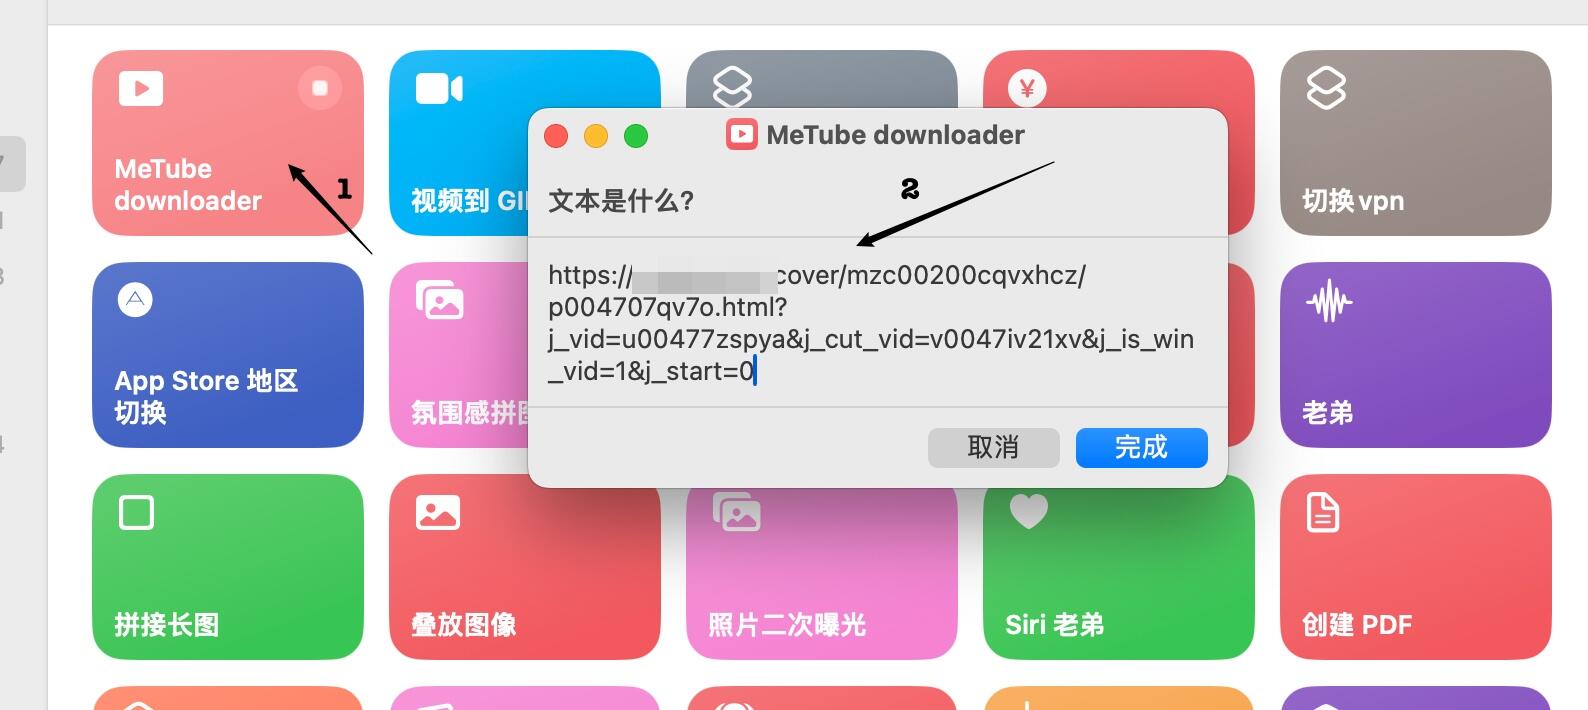 MeTube Downloader